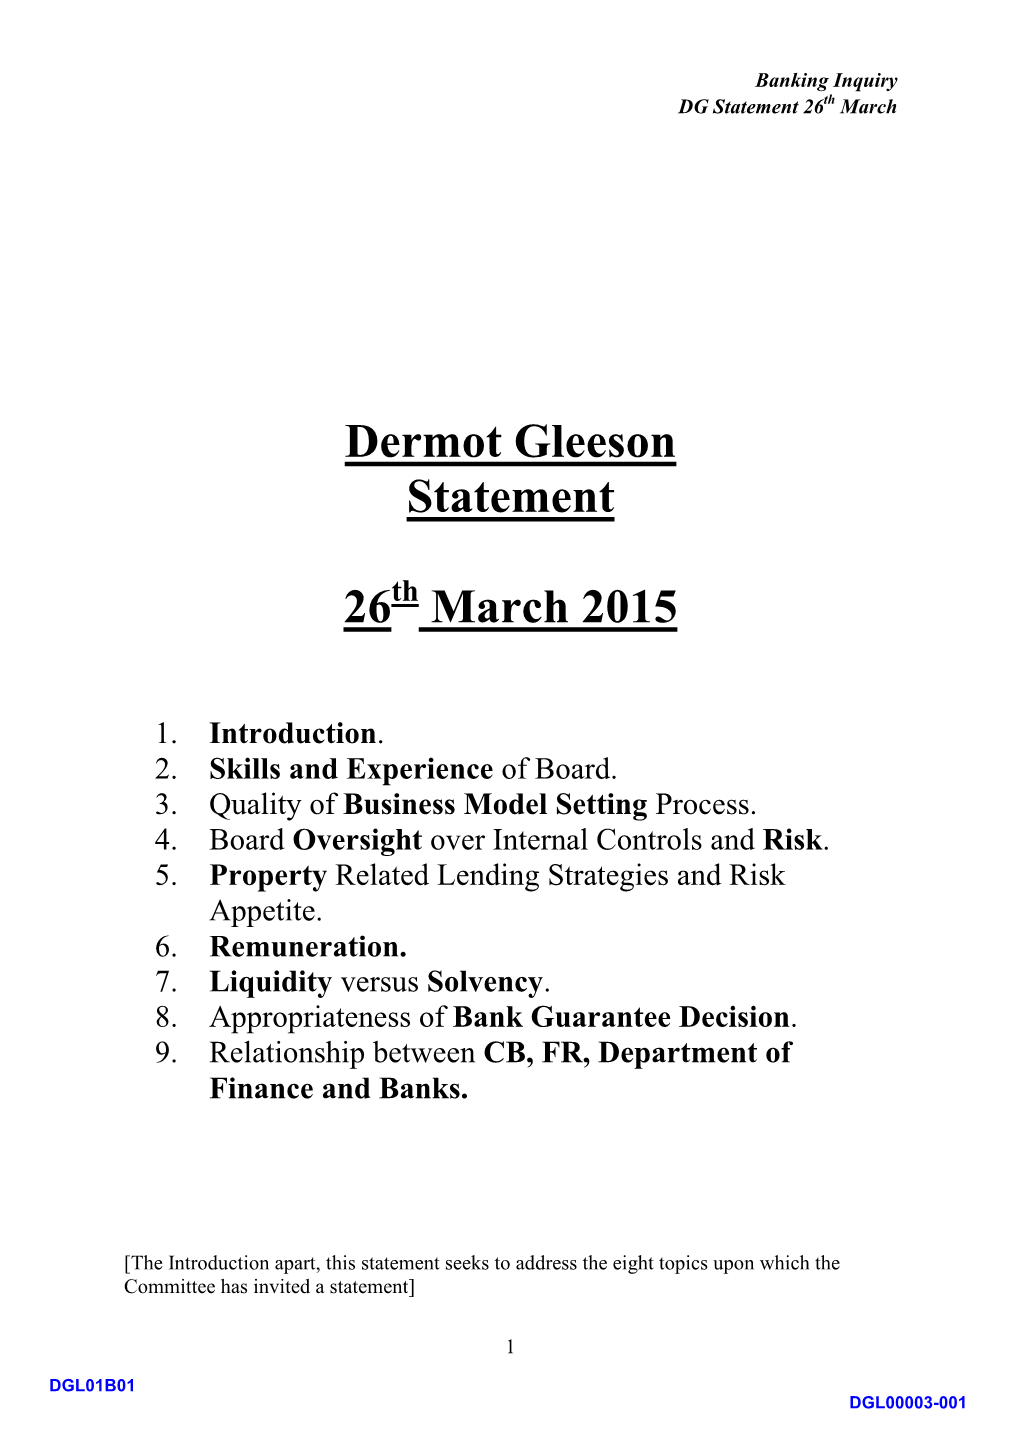 Dermot Gleeson Statement 26 March 2015